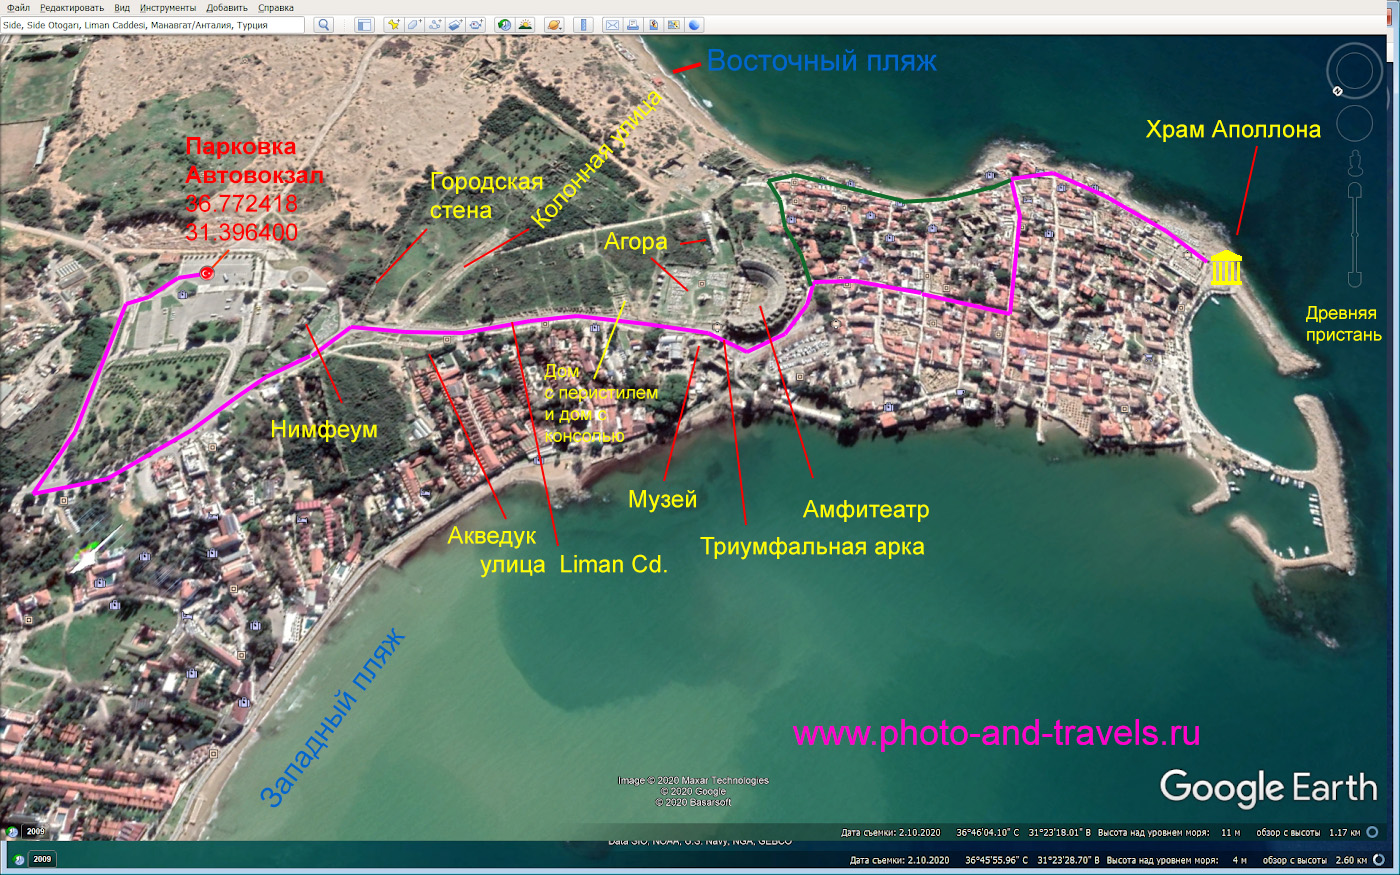 4. Карта со схемой маршрута экскурсии по развалинам древнего города Сиде в Турции. Отзывы о самостоятельной поездке.